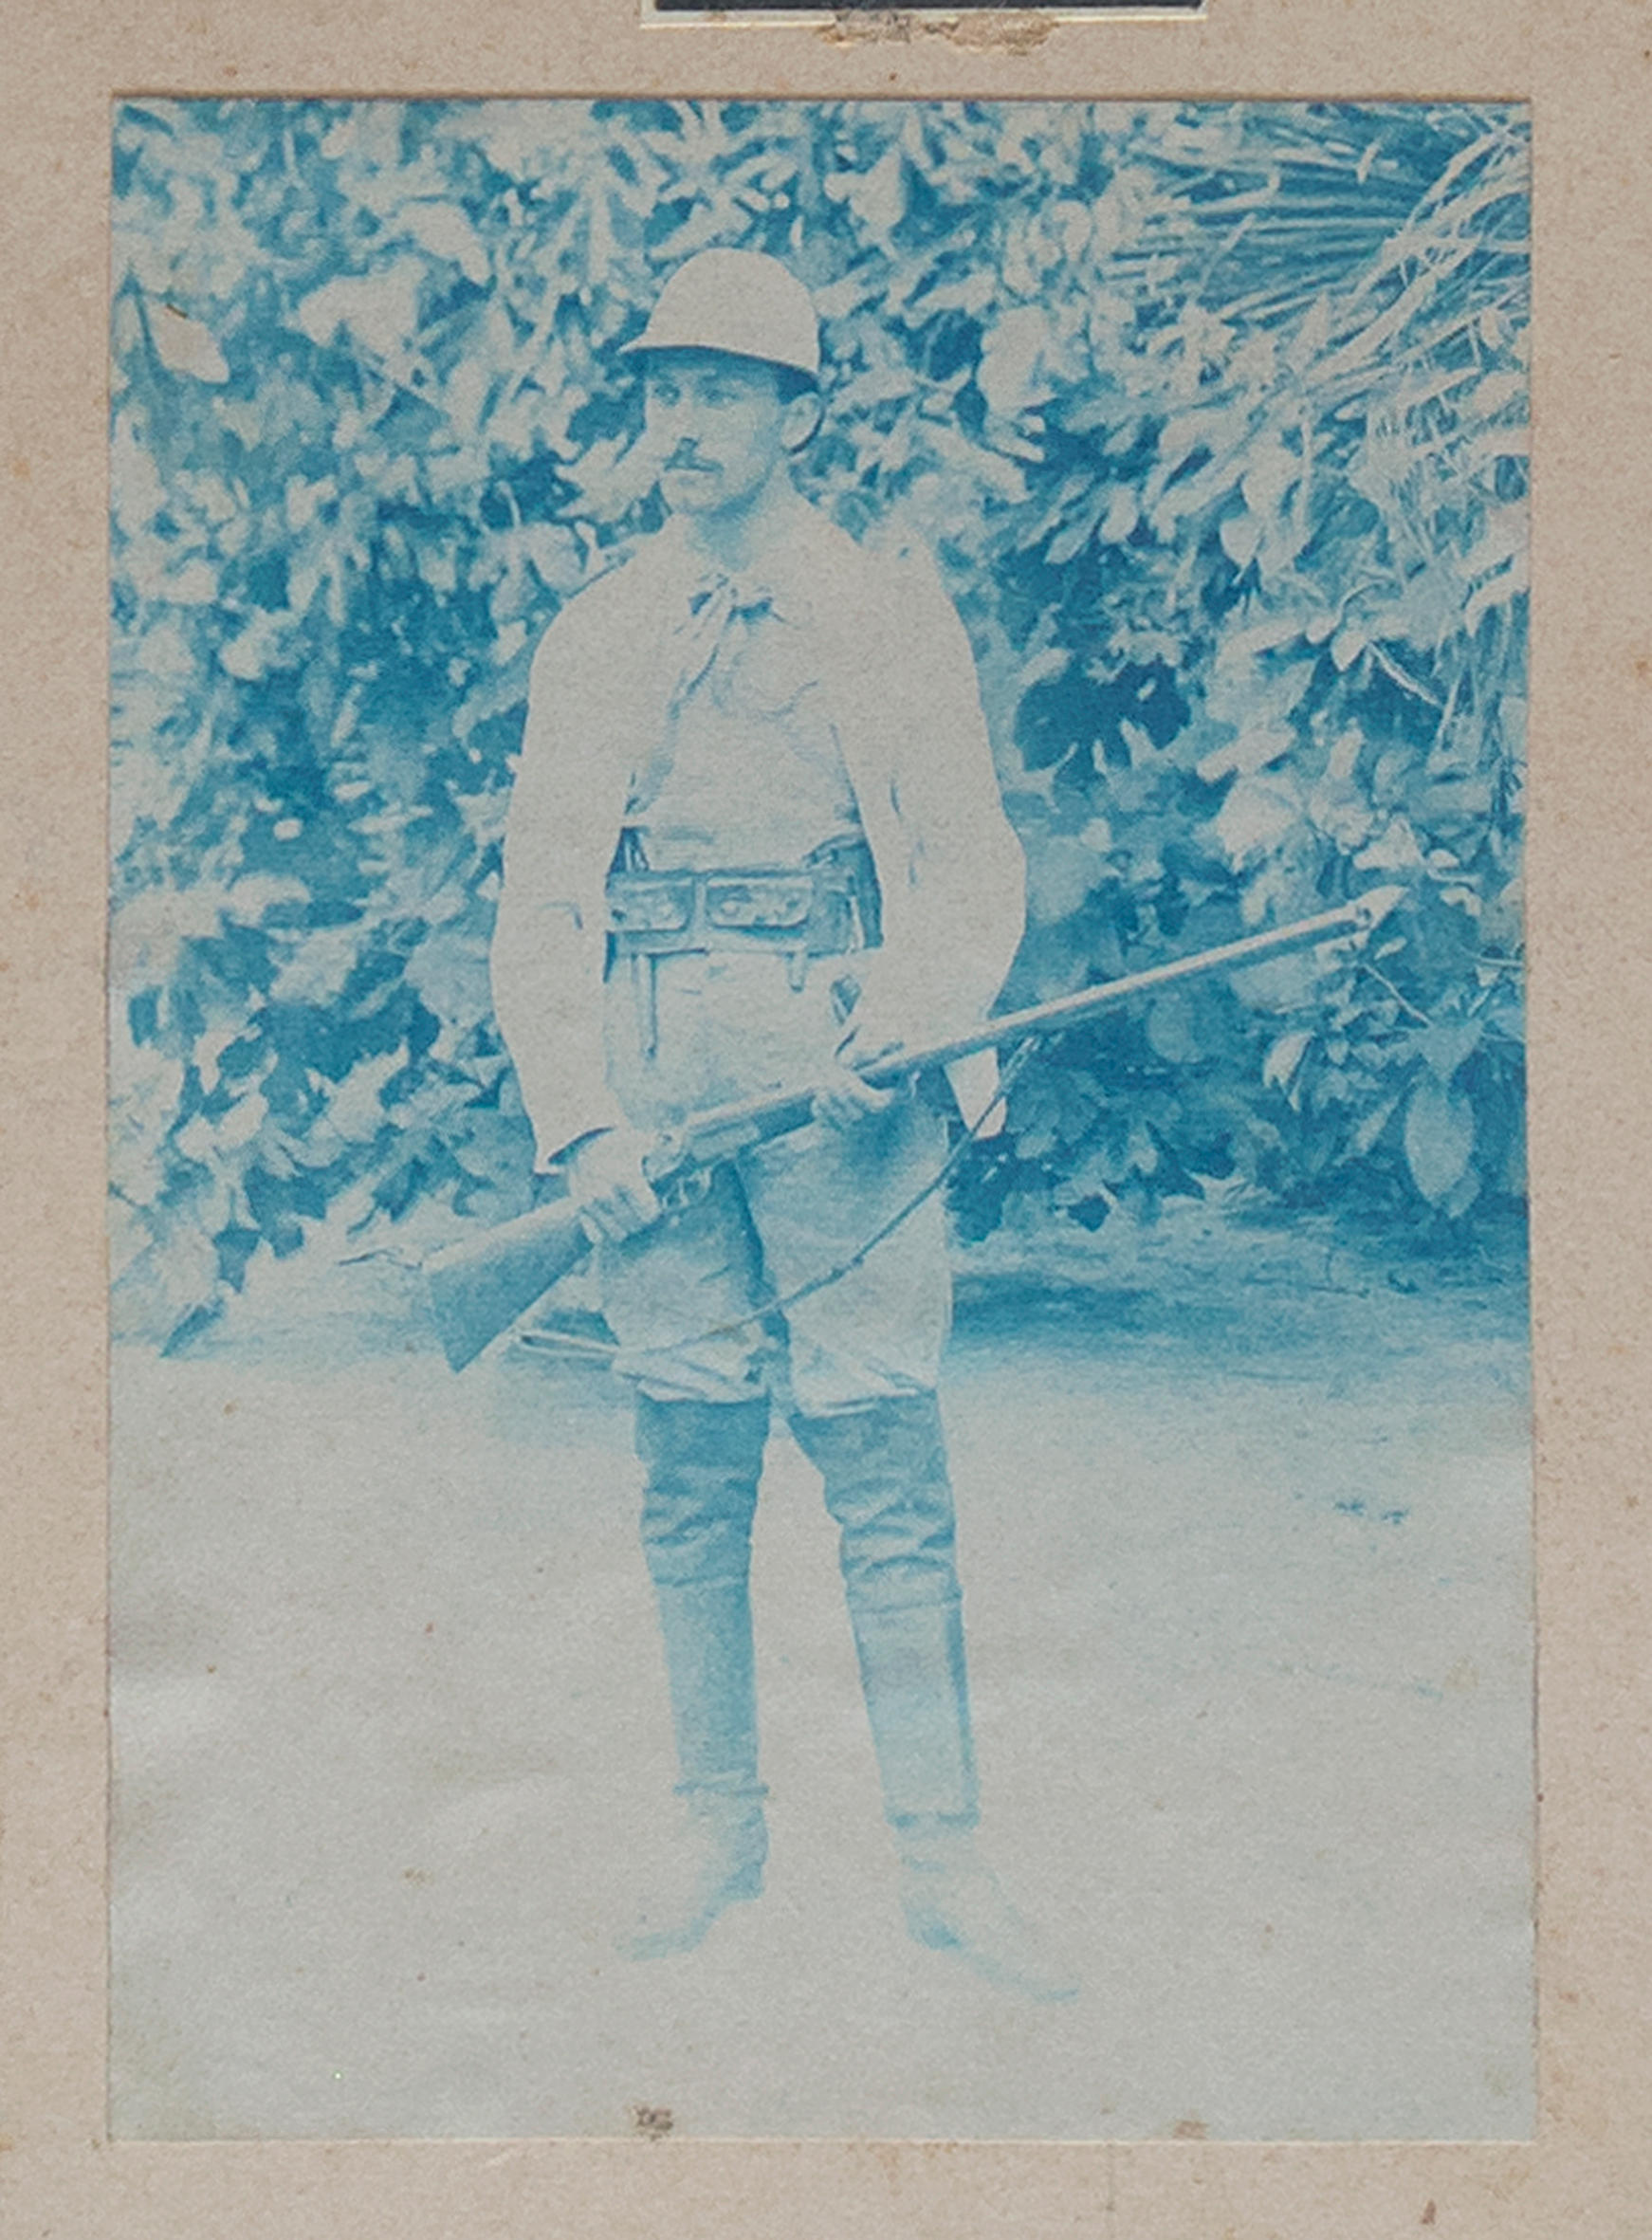 Fotografia tingida em cian de um caçador e seu rifle